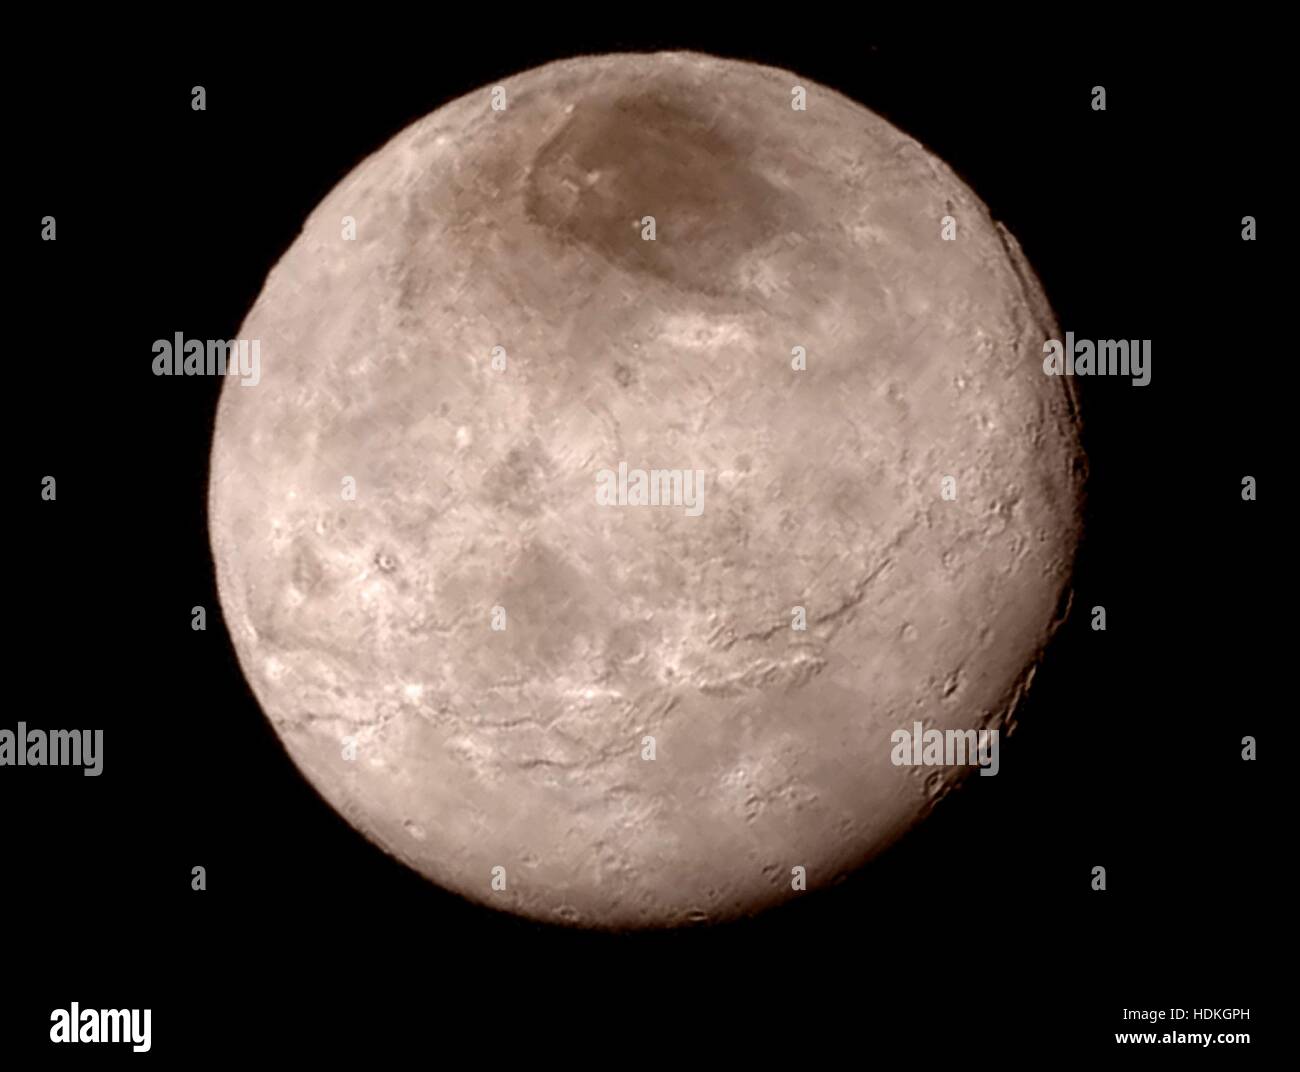 La NASA Nuovi Orizzonti Long Range Reconnaissance Imager acquisisce Caronte, la più grande luna di Plutone, durante un volo in prossimità Luglio 14, 2015 mentre in orbita. Foto Stock